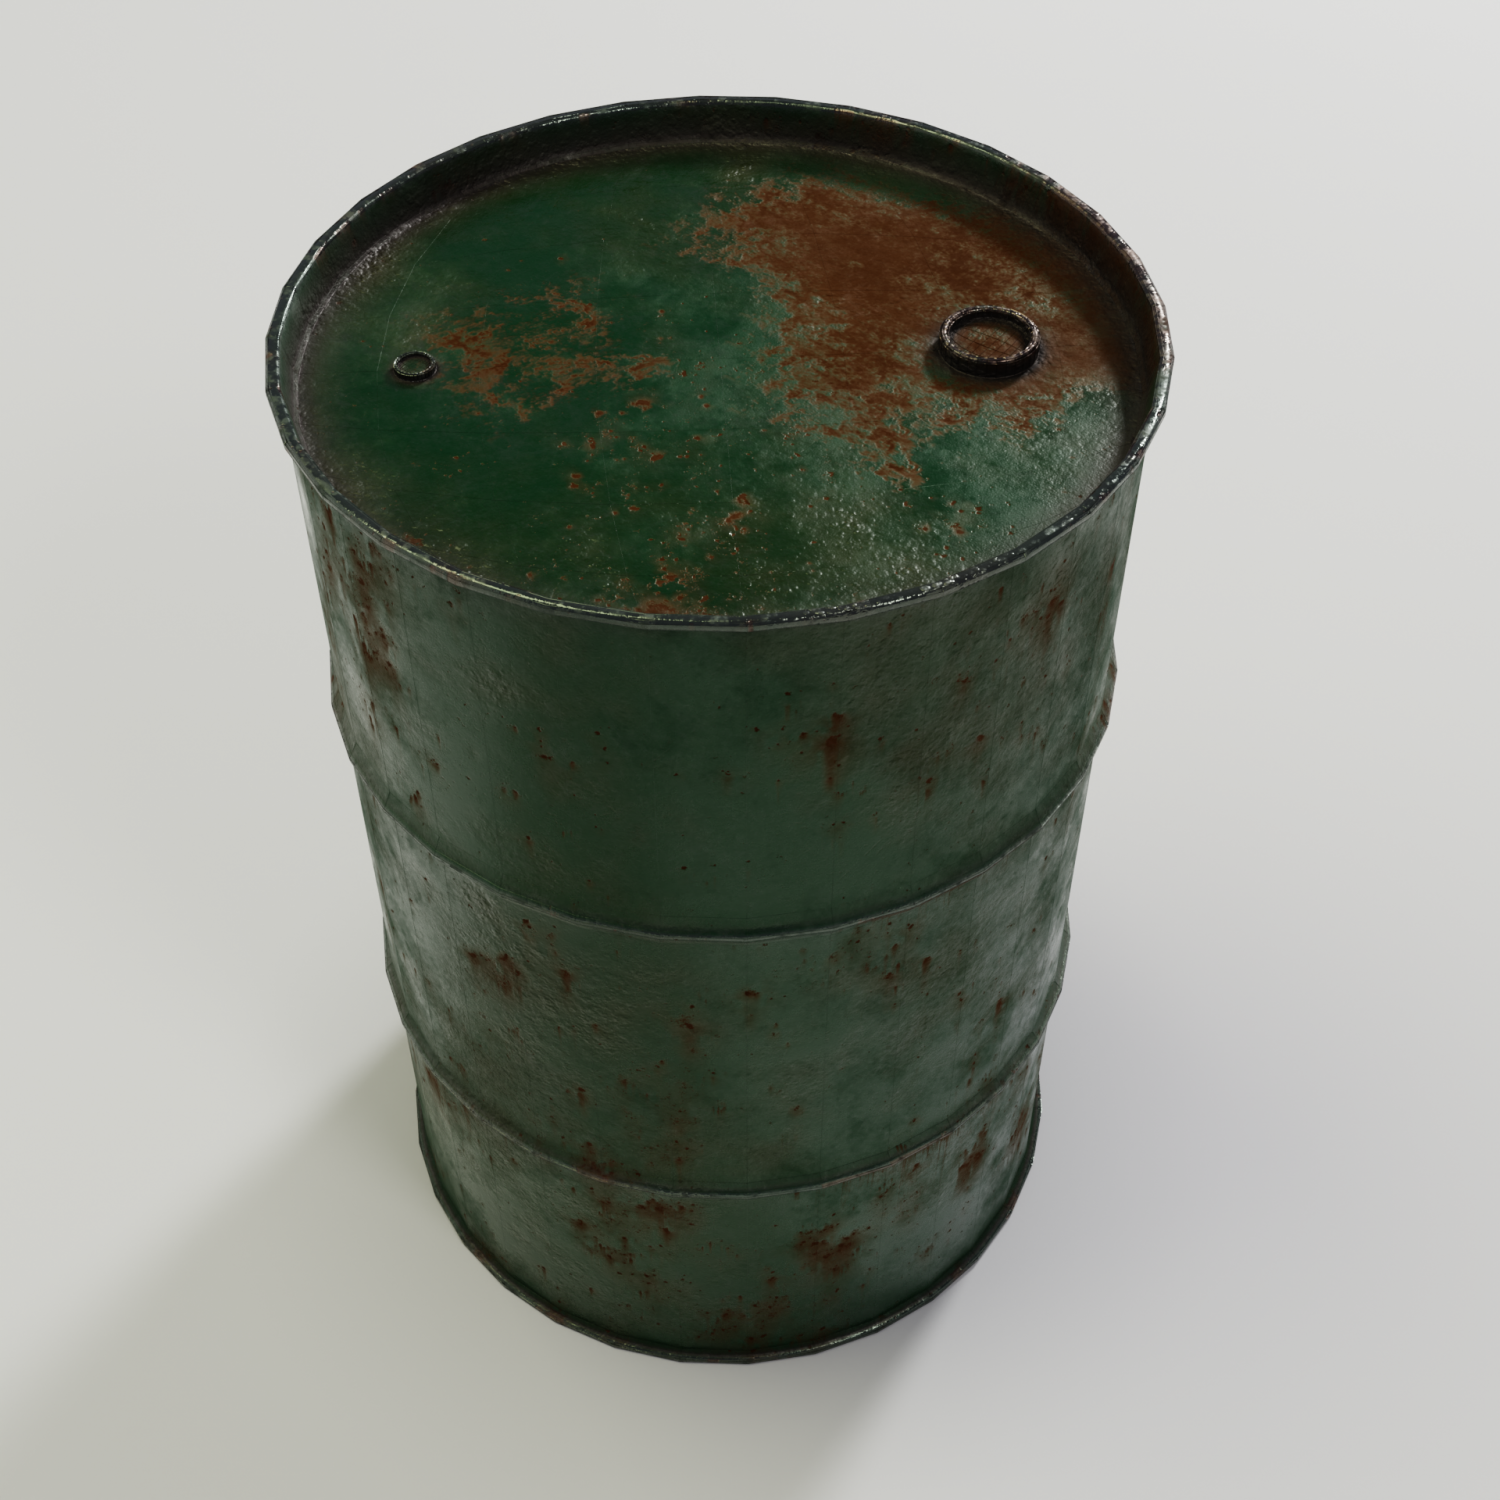 Instant barrel rust фото 19